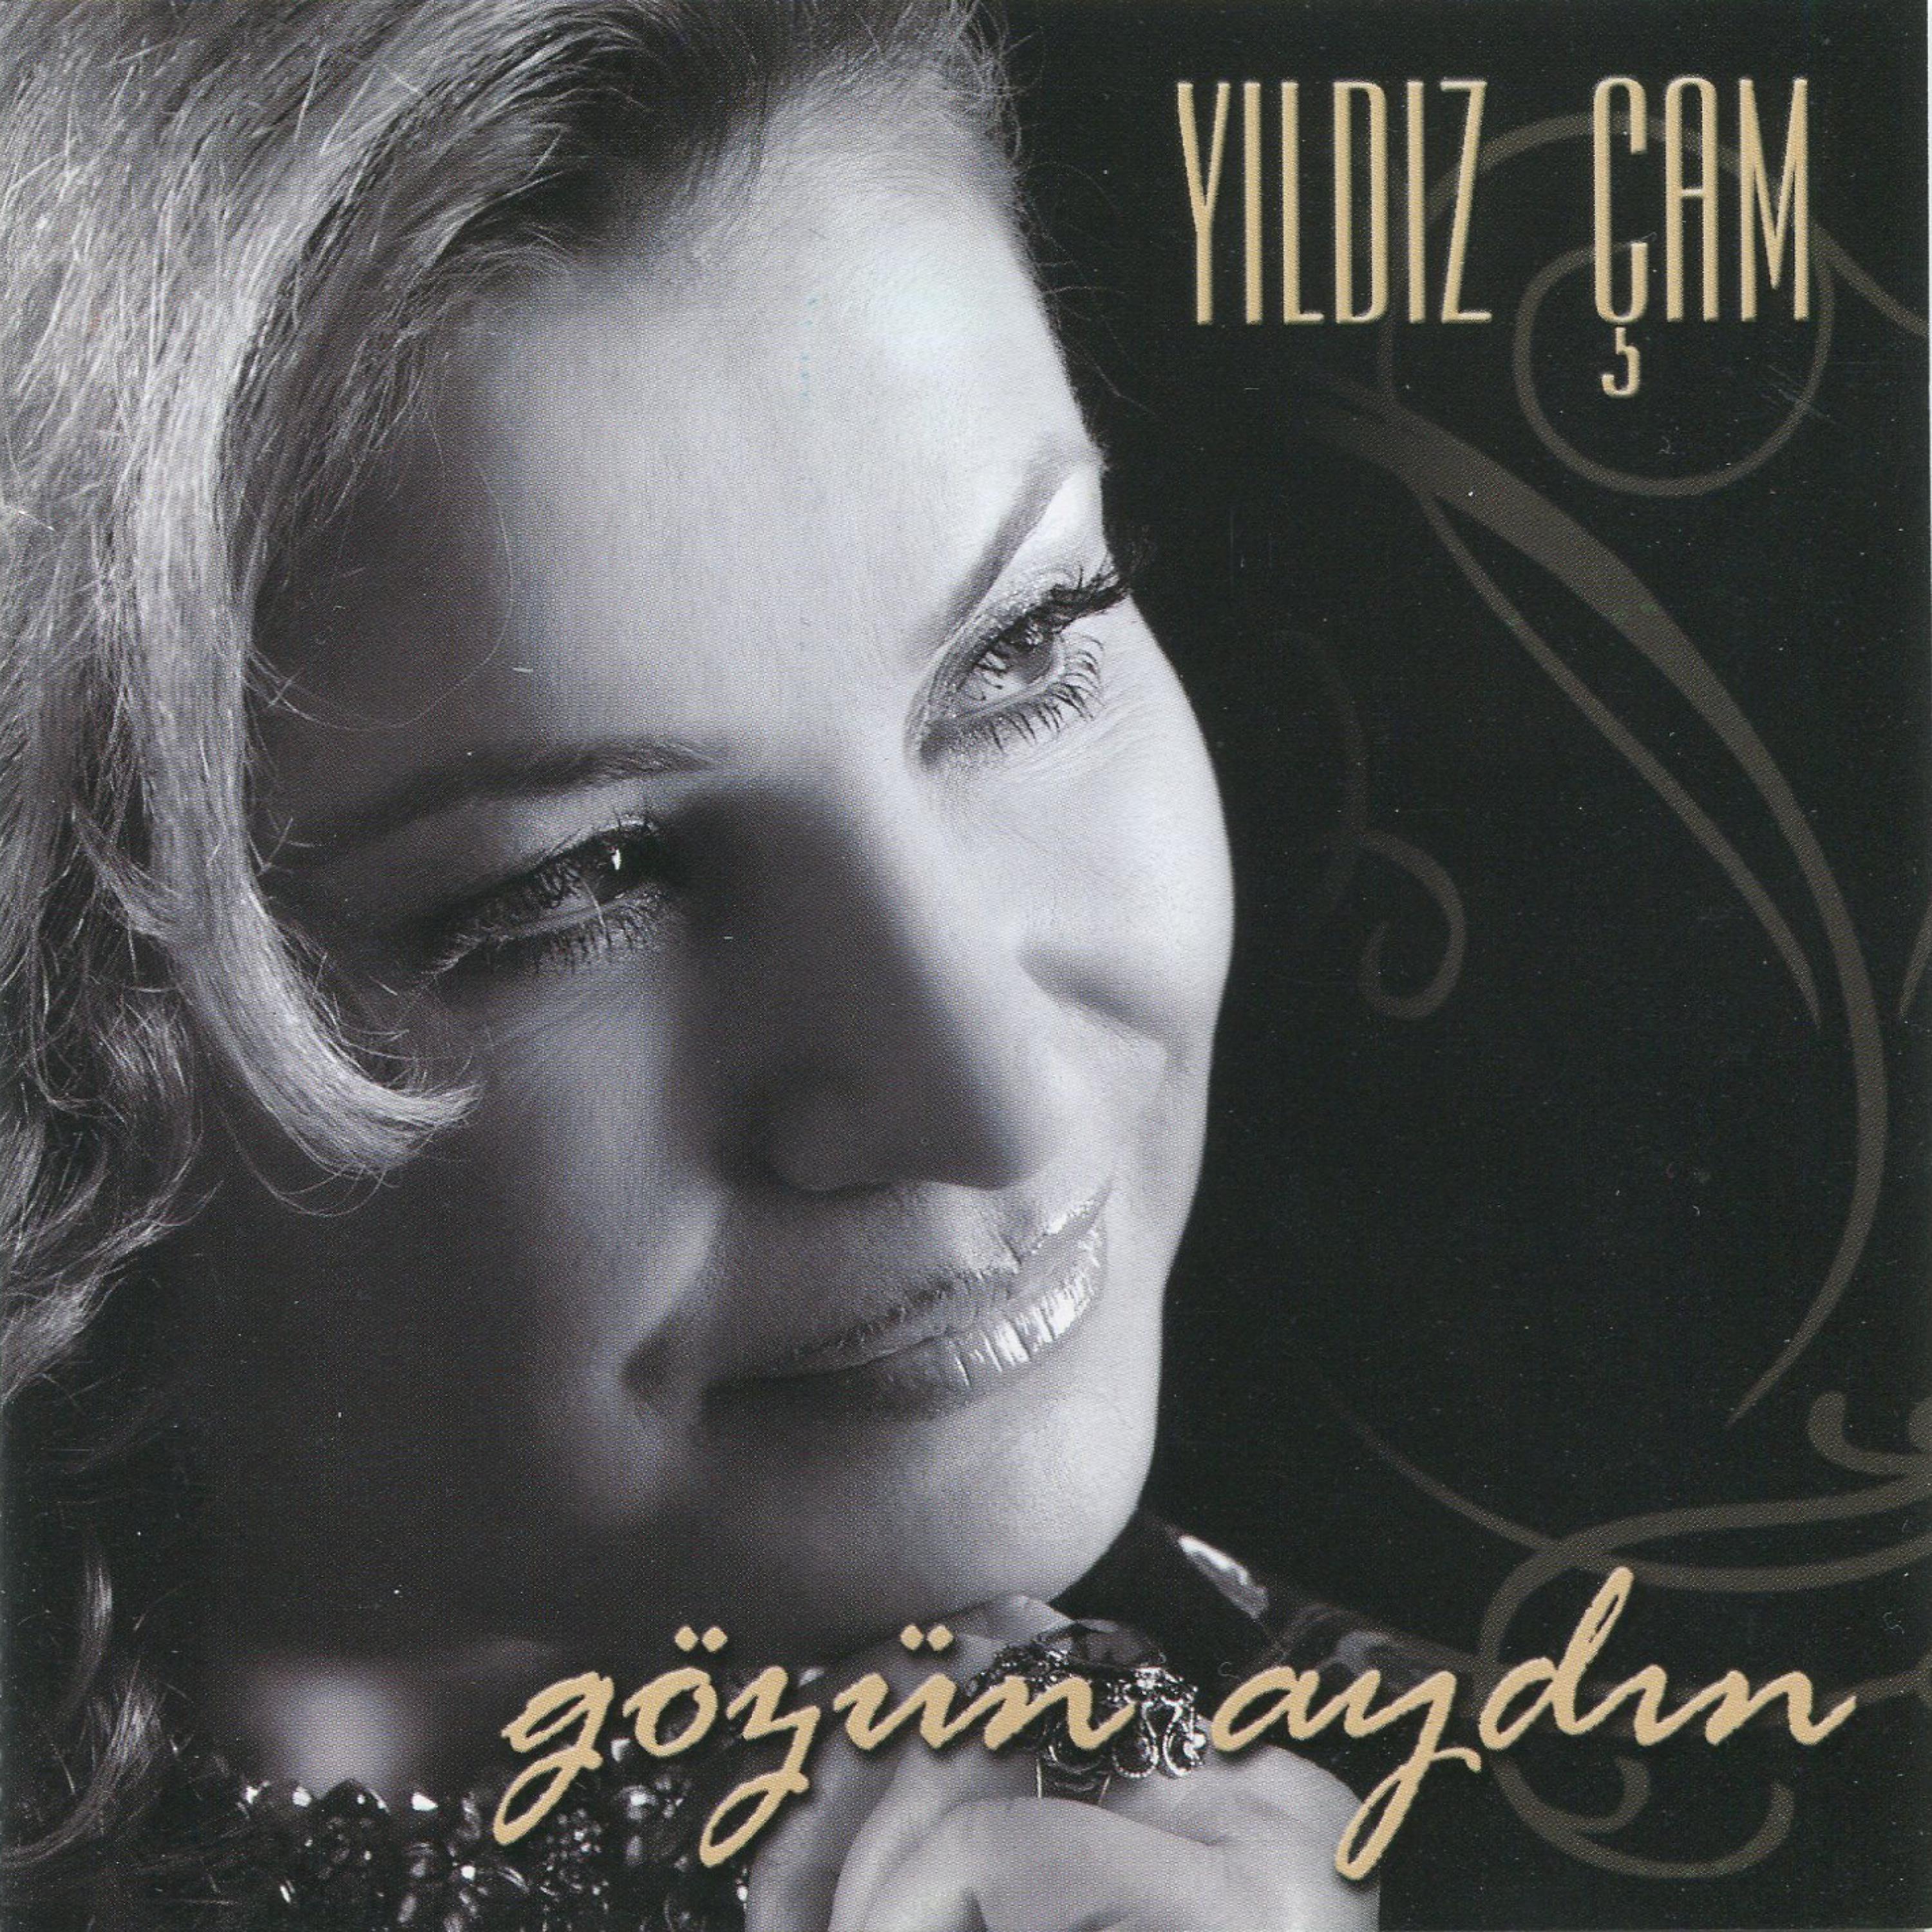 Постер альбома Gözün Aydın